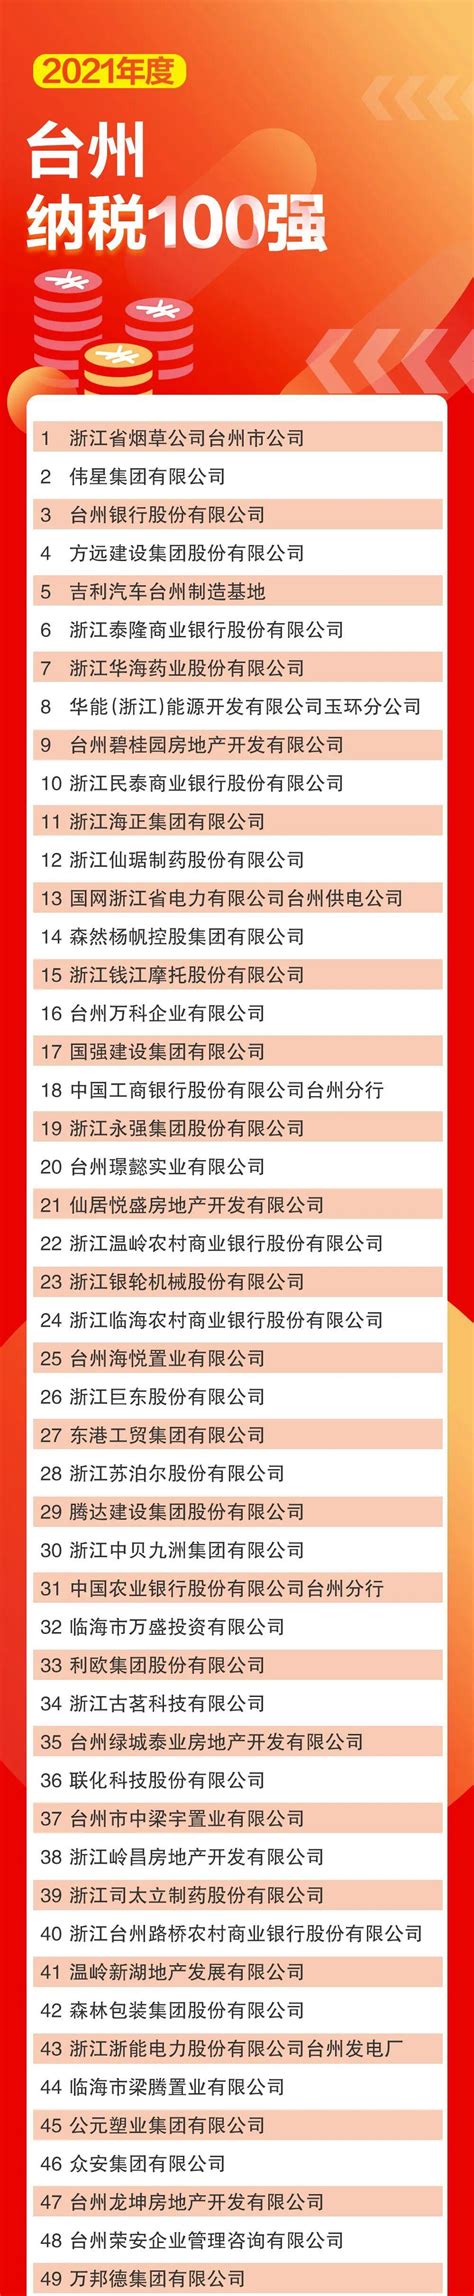 台州企业seo排名前十